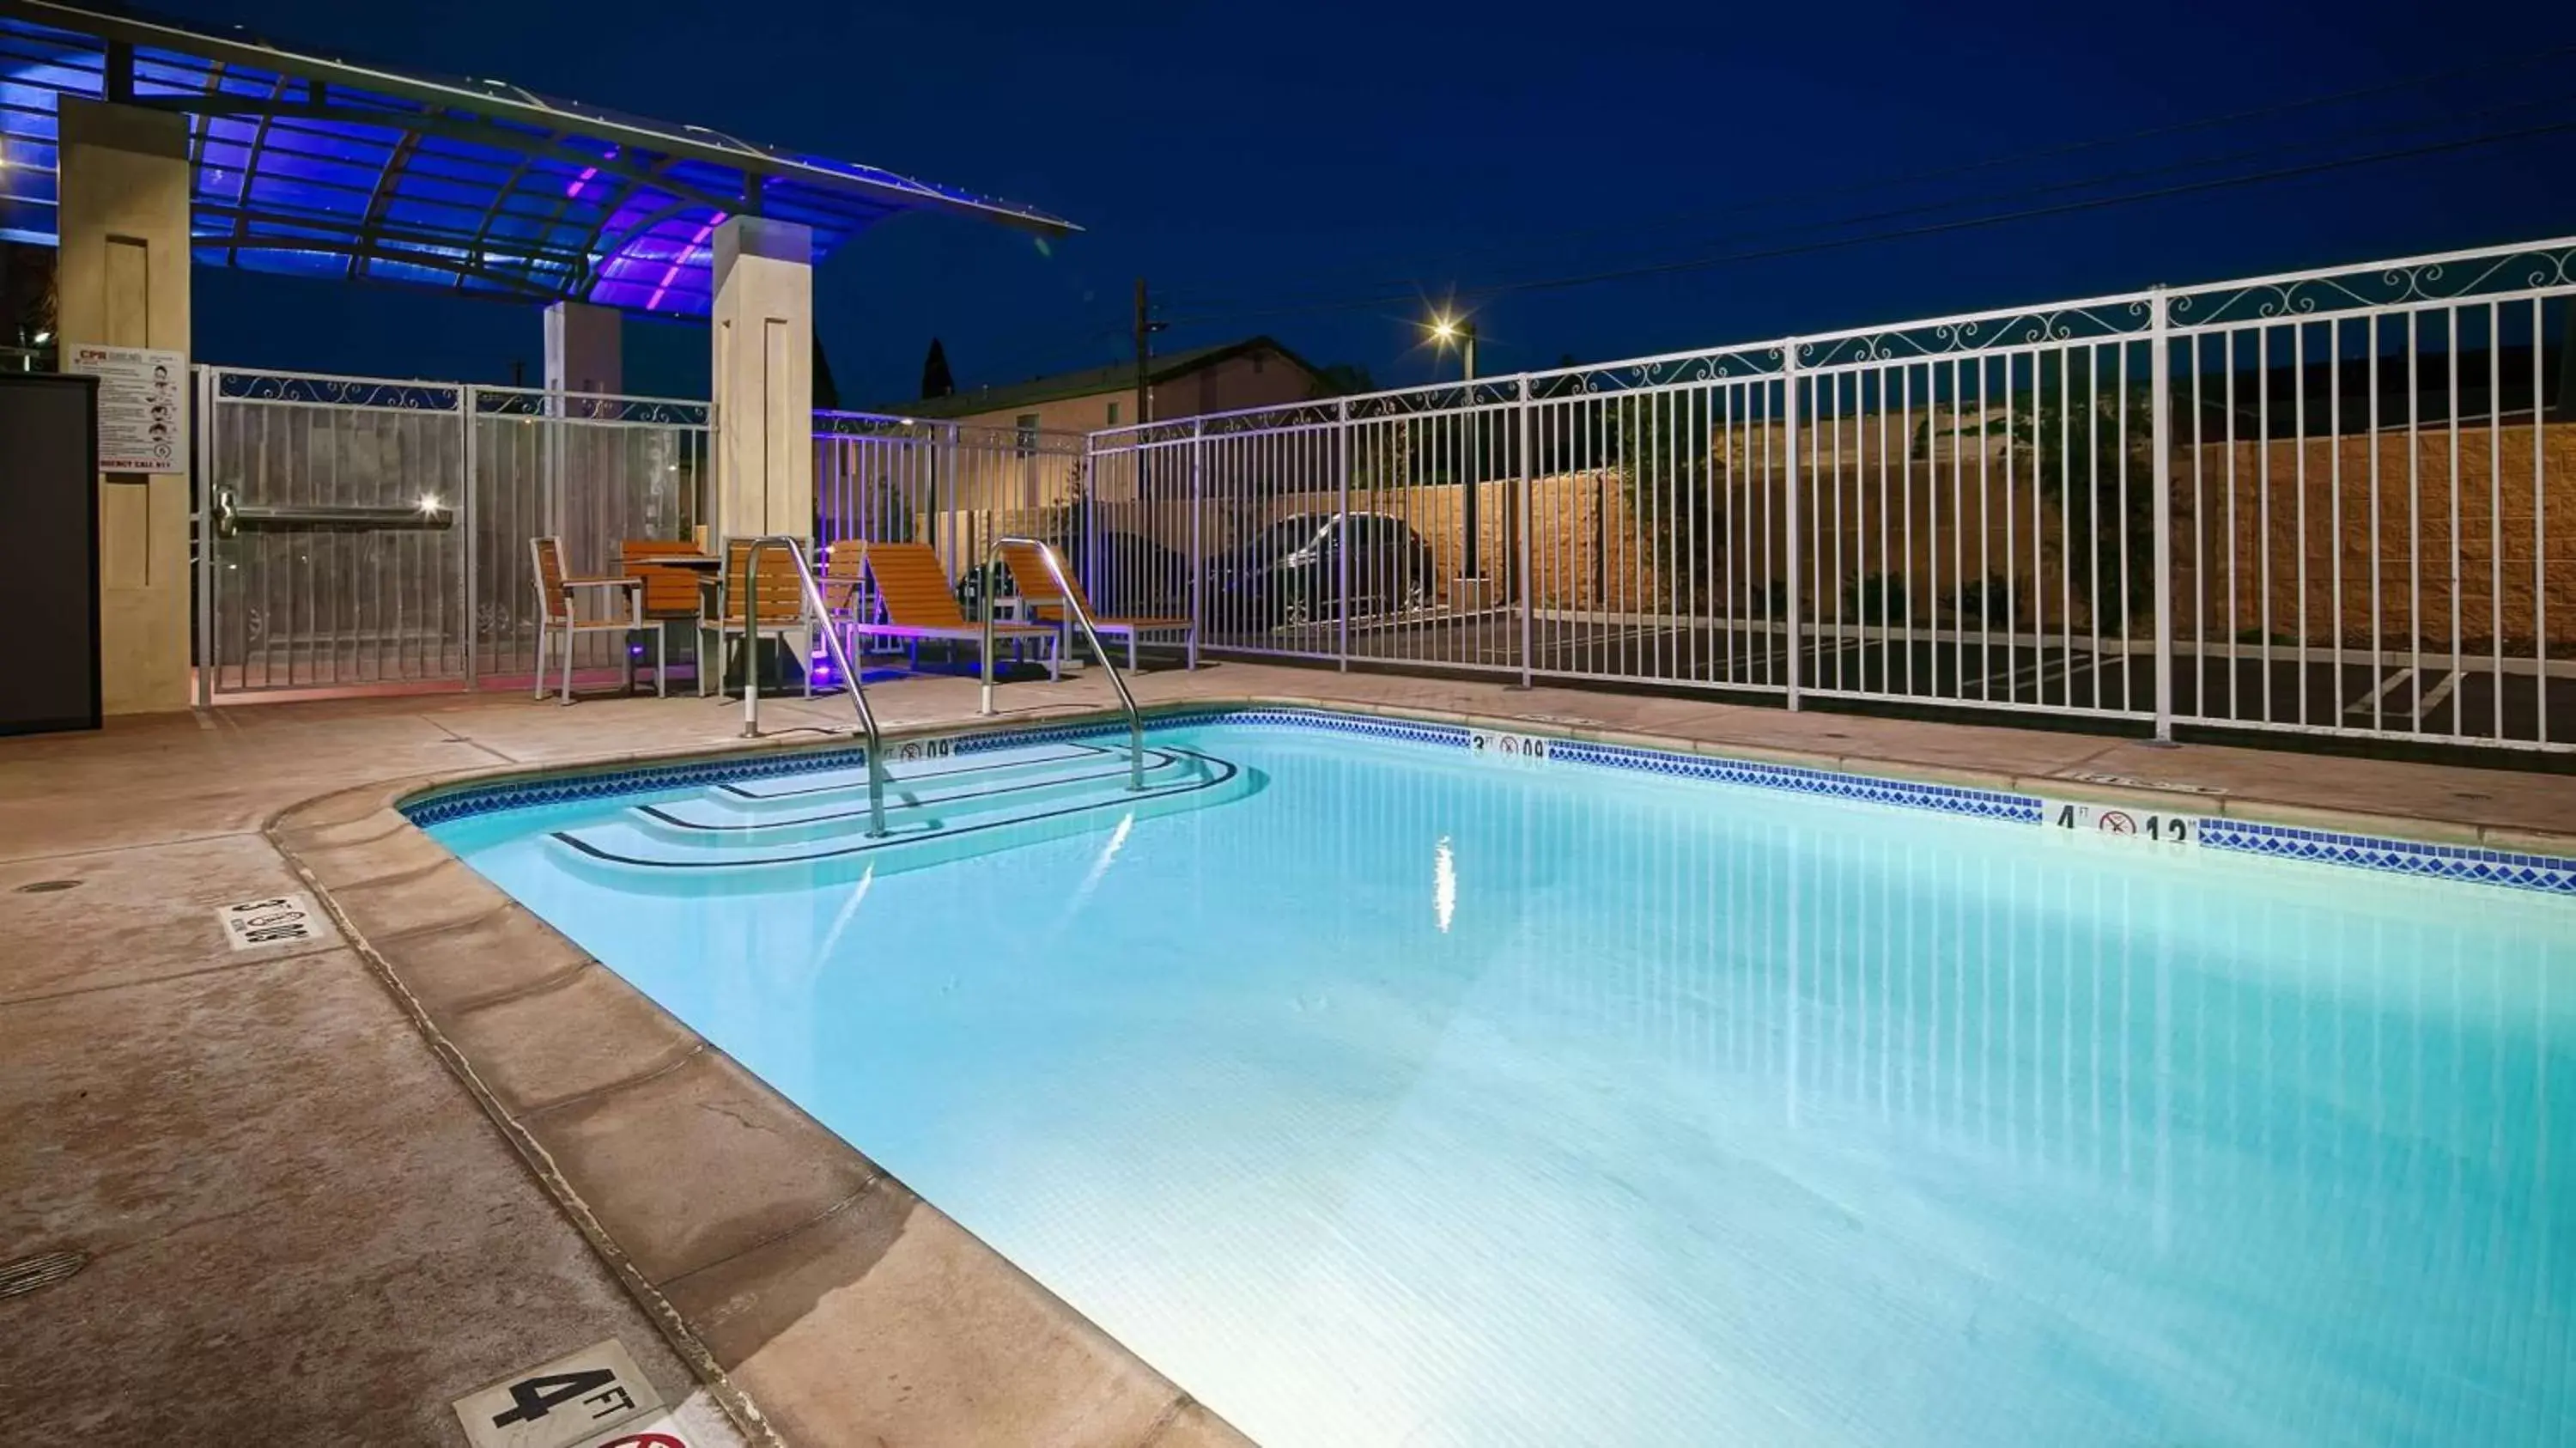 On site, Swimming Pool in Best Western Plus Gardena-Los Angeles Inn & Suites